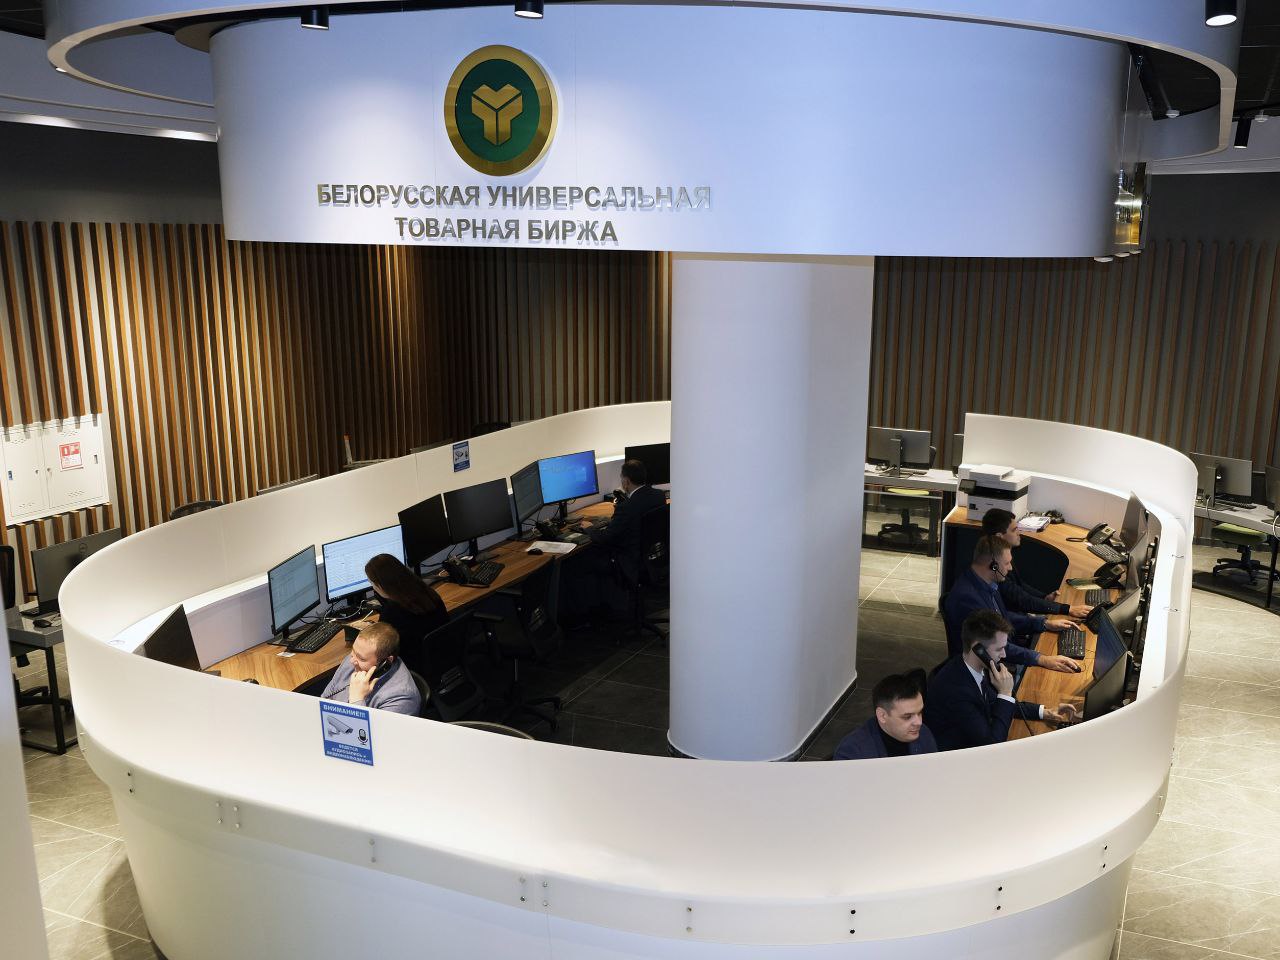 Резиденты ШОС в 4 раза нарастили торговлю на белорусской бирже